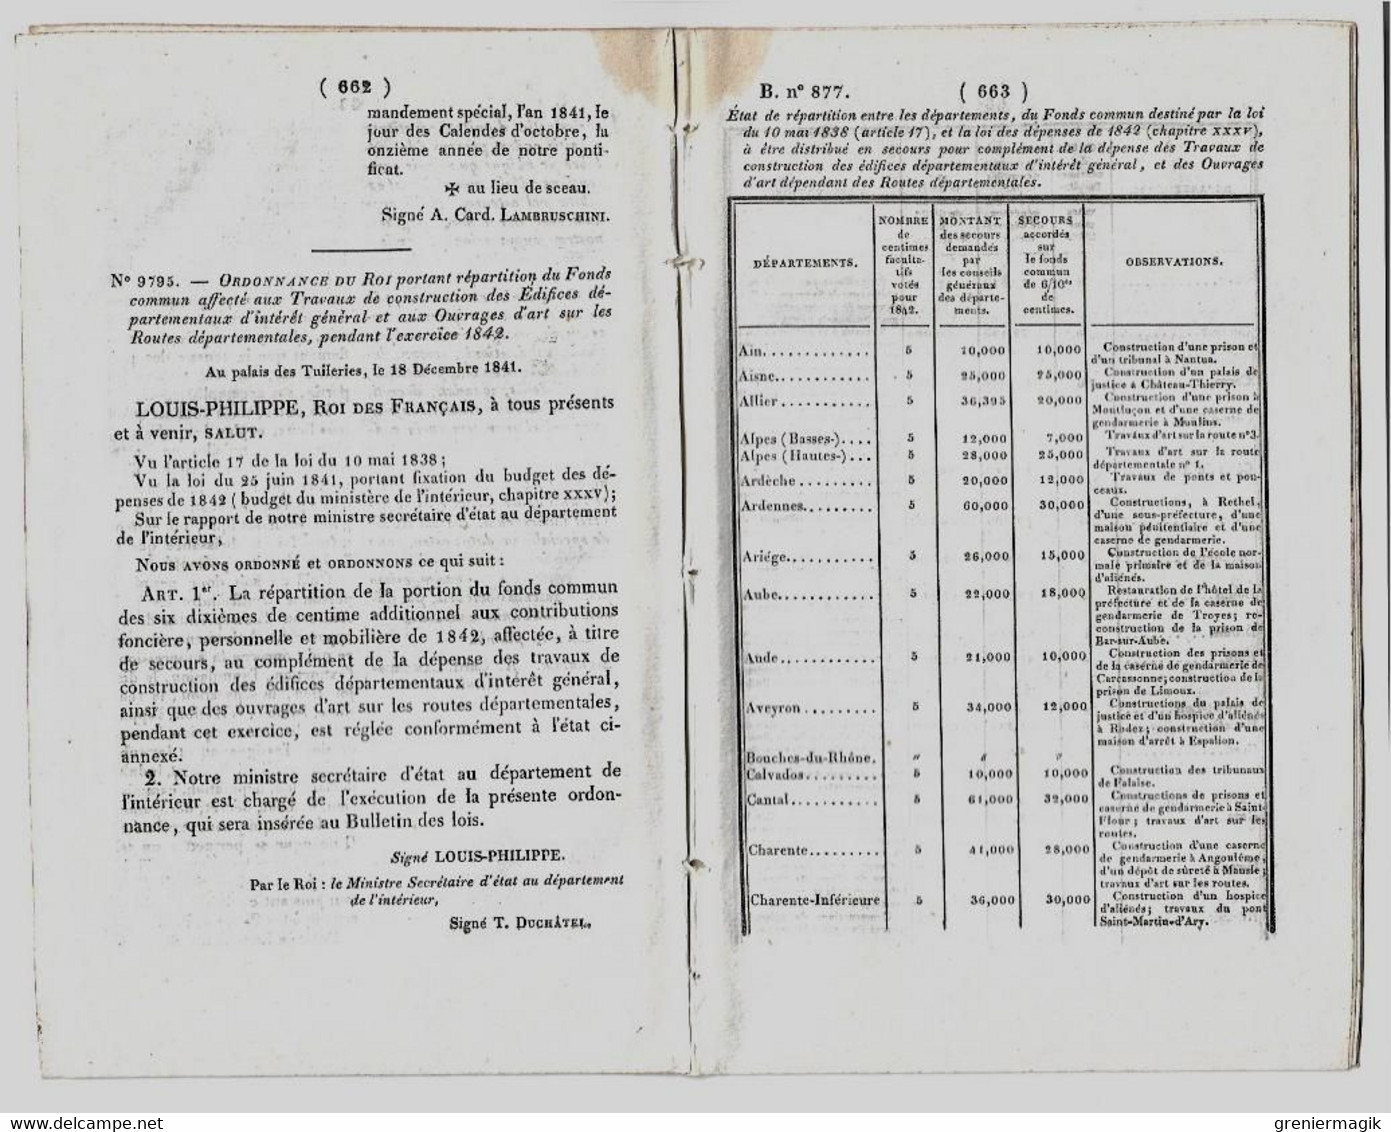 Bulletin des Lois 877 1842 Convention fermeture des Dardanelles et du Bosphore/Métropole de Cambrai/Prison Brest...